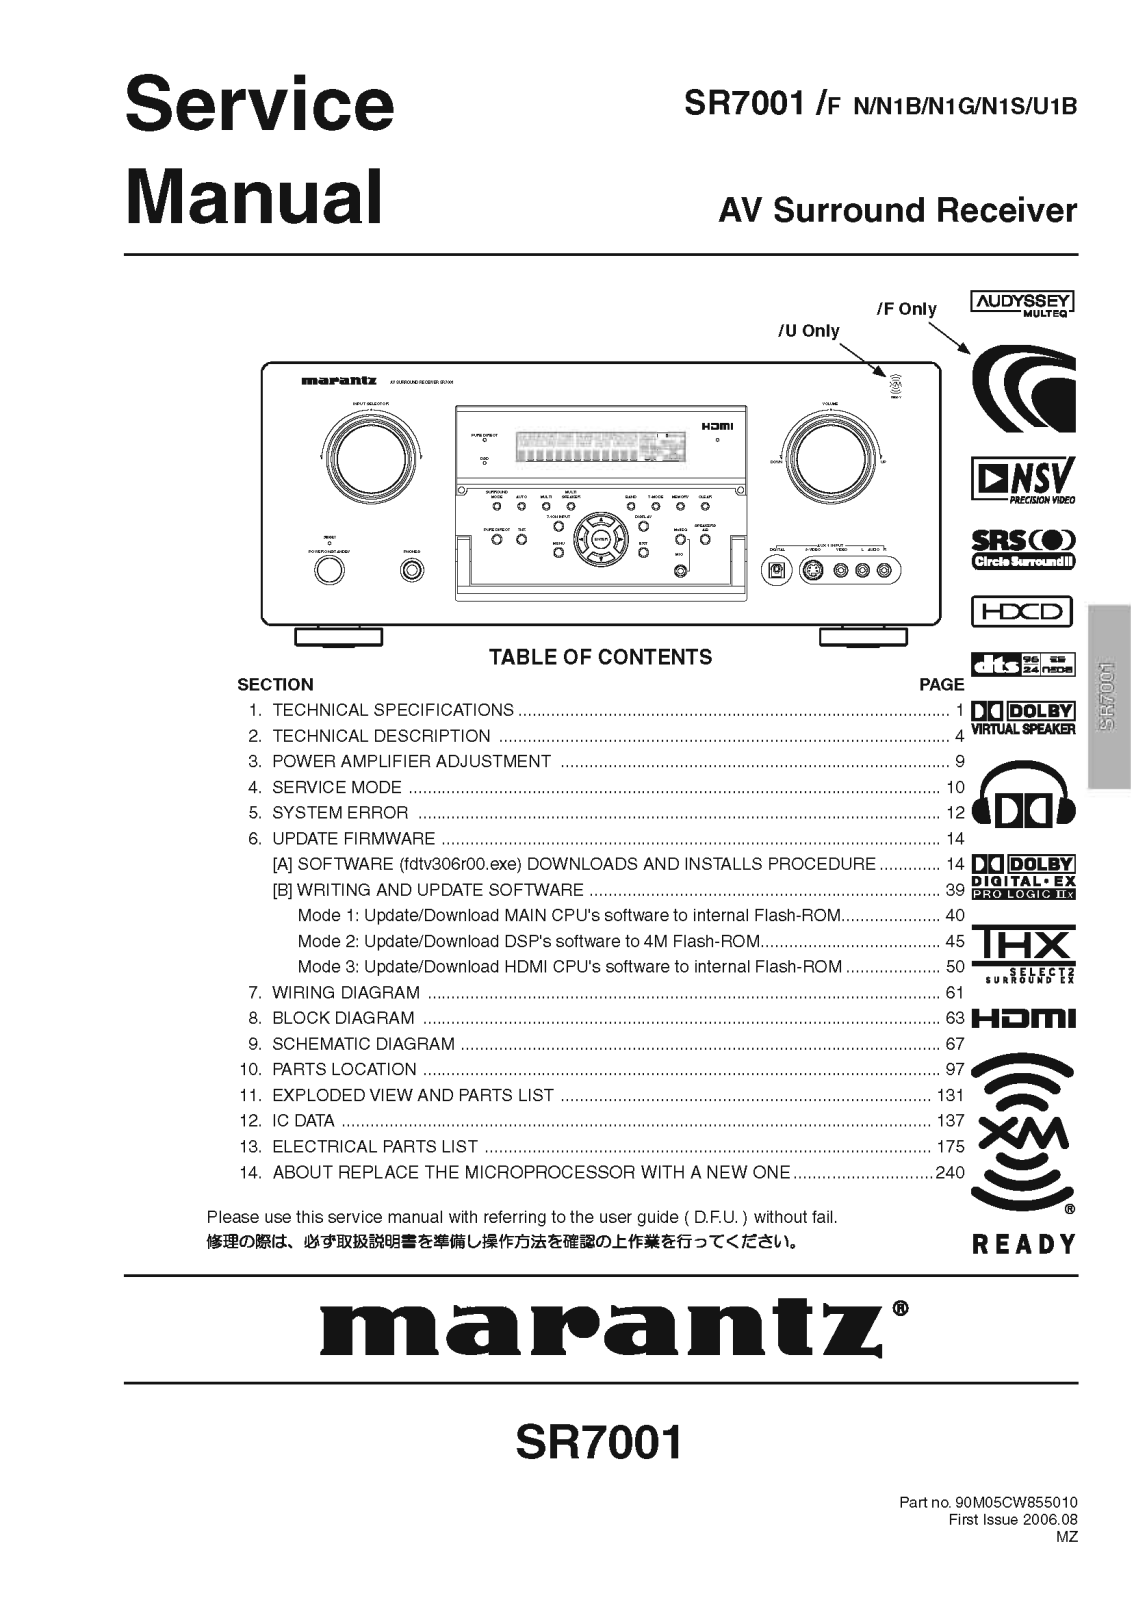 Marantz SR-7001 Service Manual